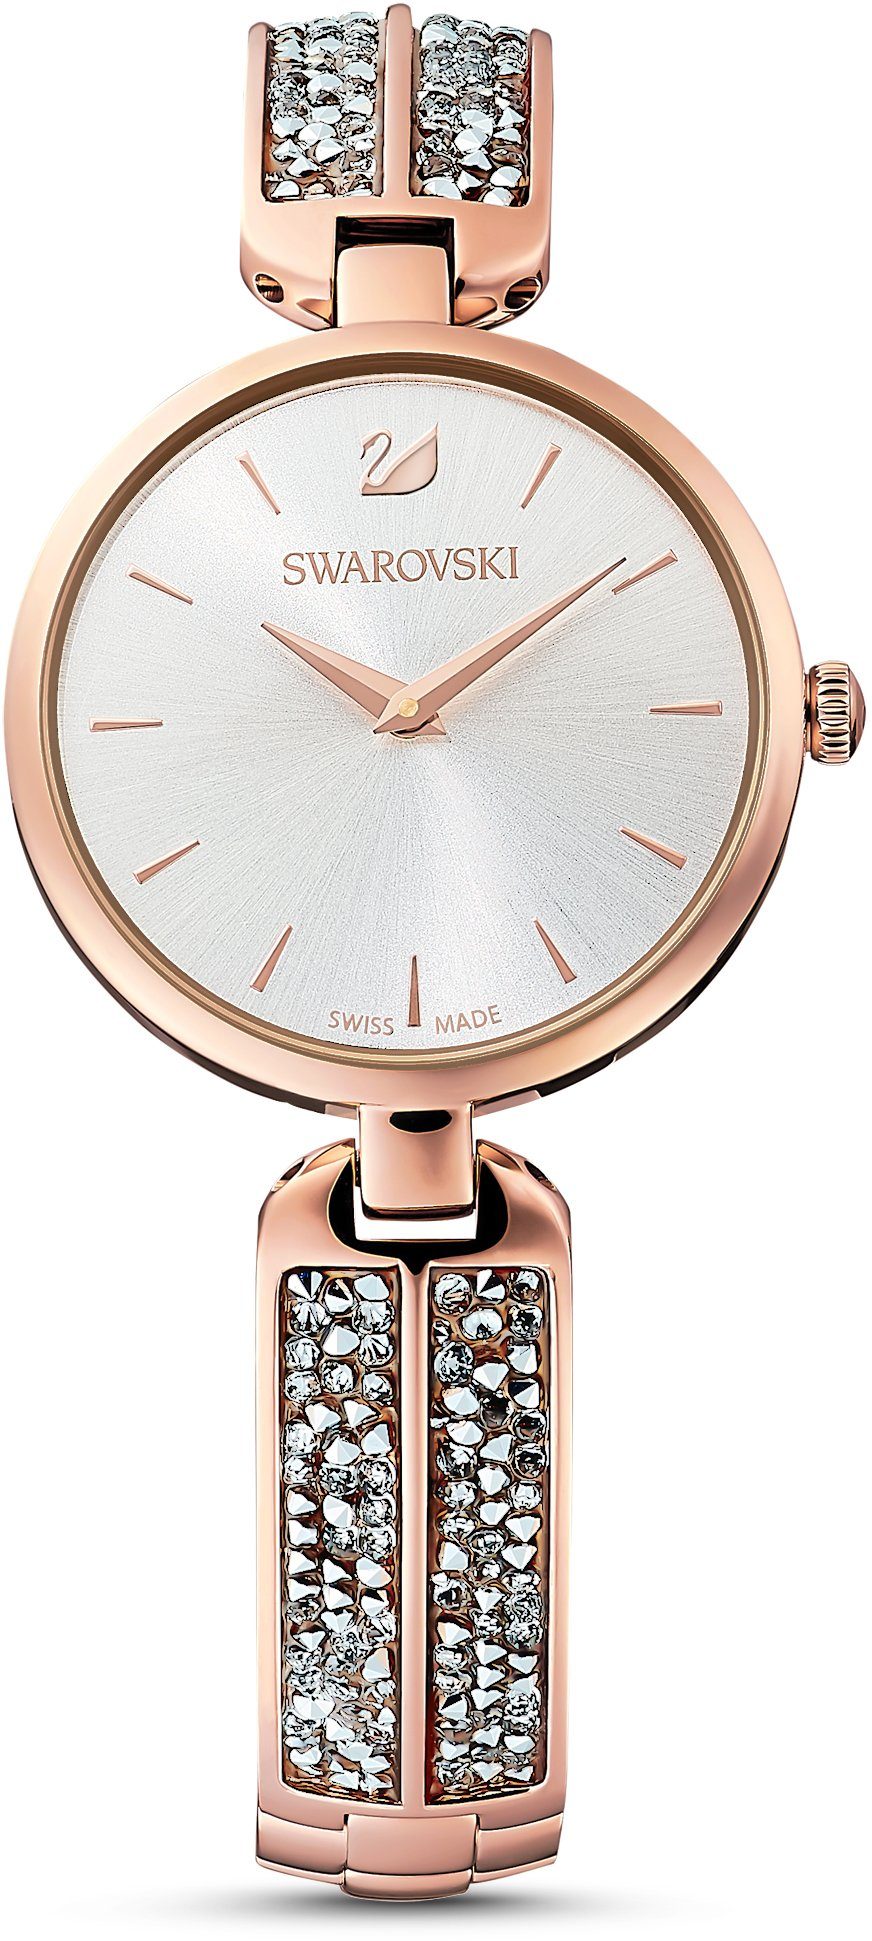 Swarovski Schweizer Uhr CRYSTAL ROCK, 5519306 roségold